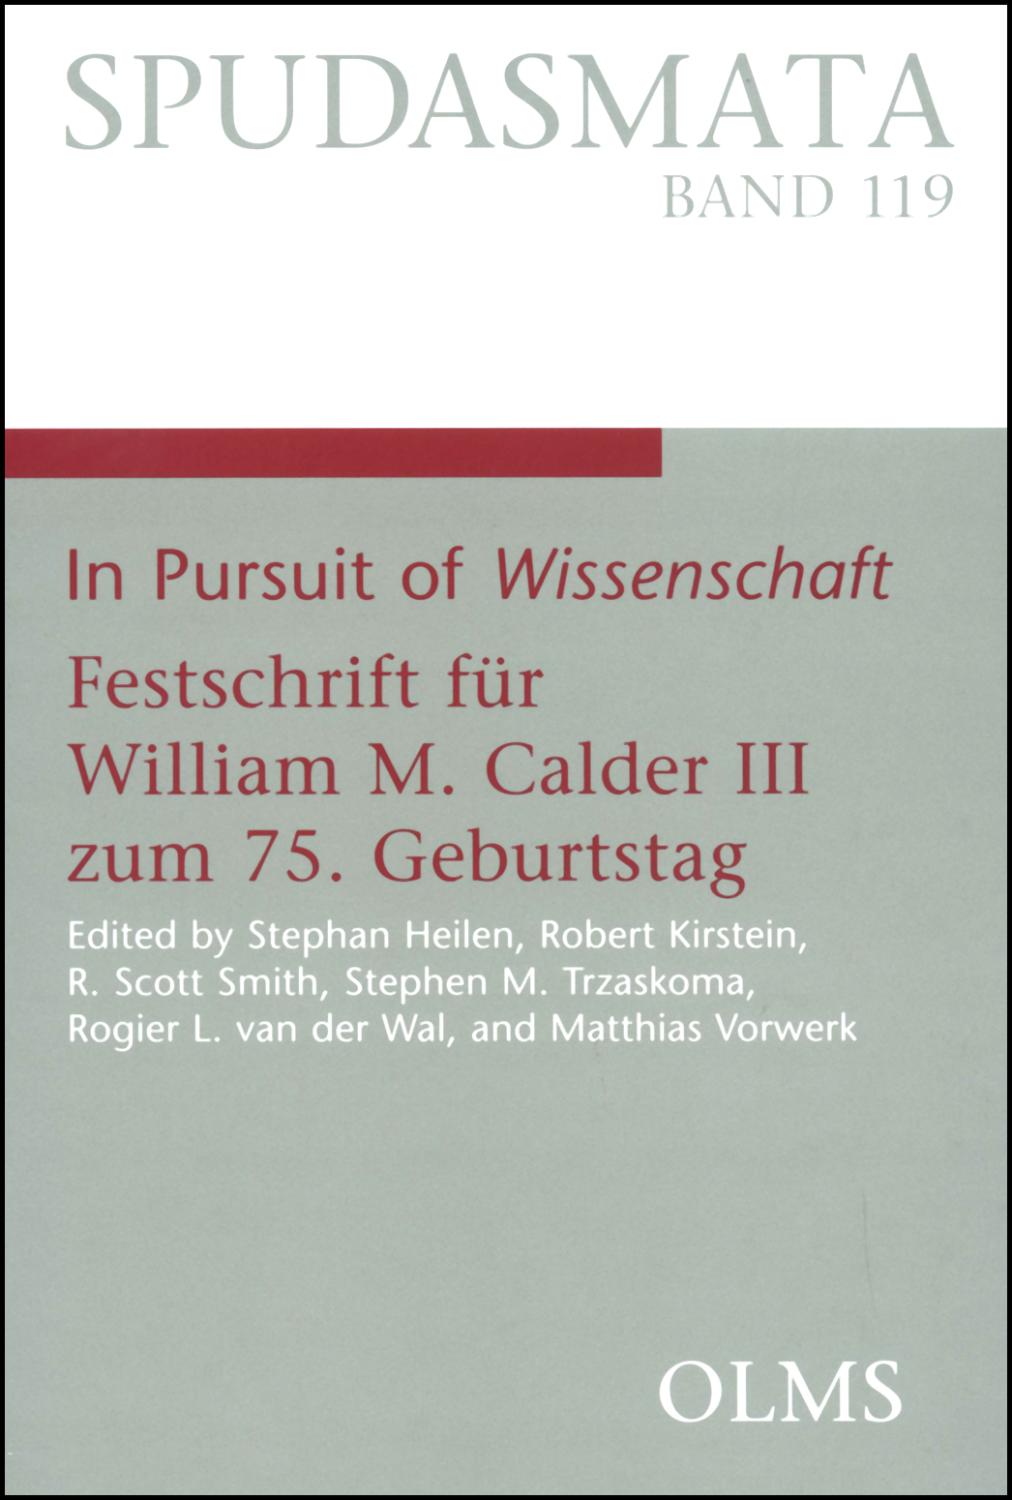 In Pursuit of Wissenschaft: Festschrift für William M. Calder III zum 75. Geburtstag. Edited by Stephan Heilen, Robert Kirstein, R.Scott Smith, ... Philologie und ihren Grenzgebieten)